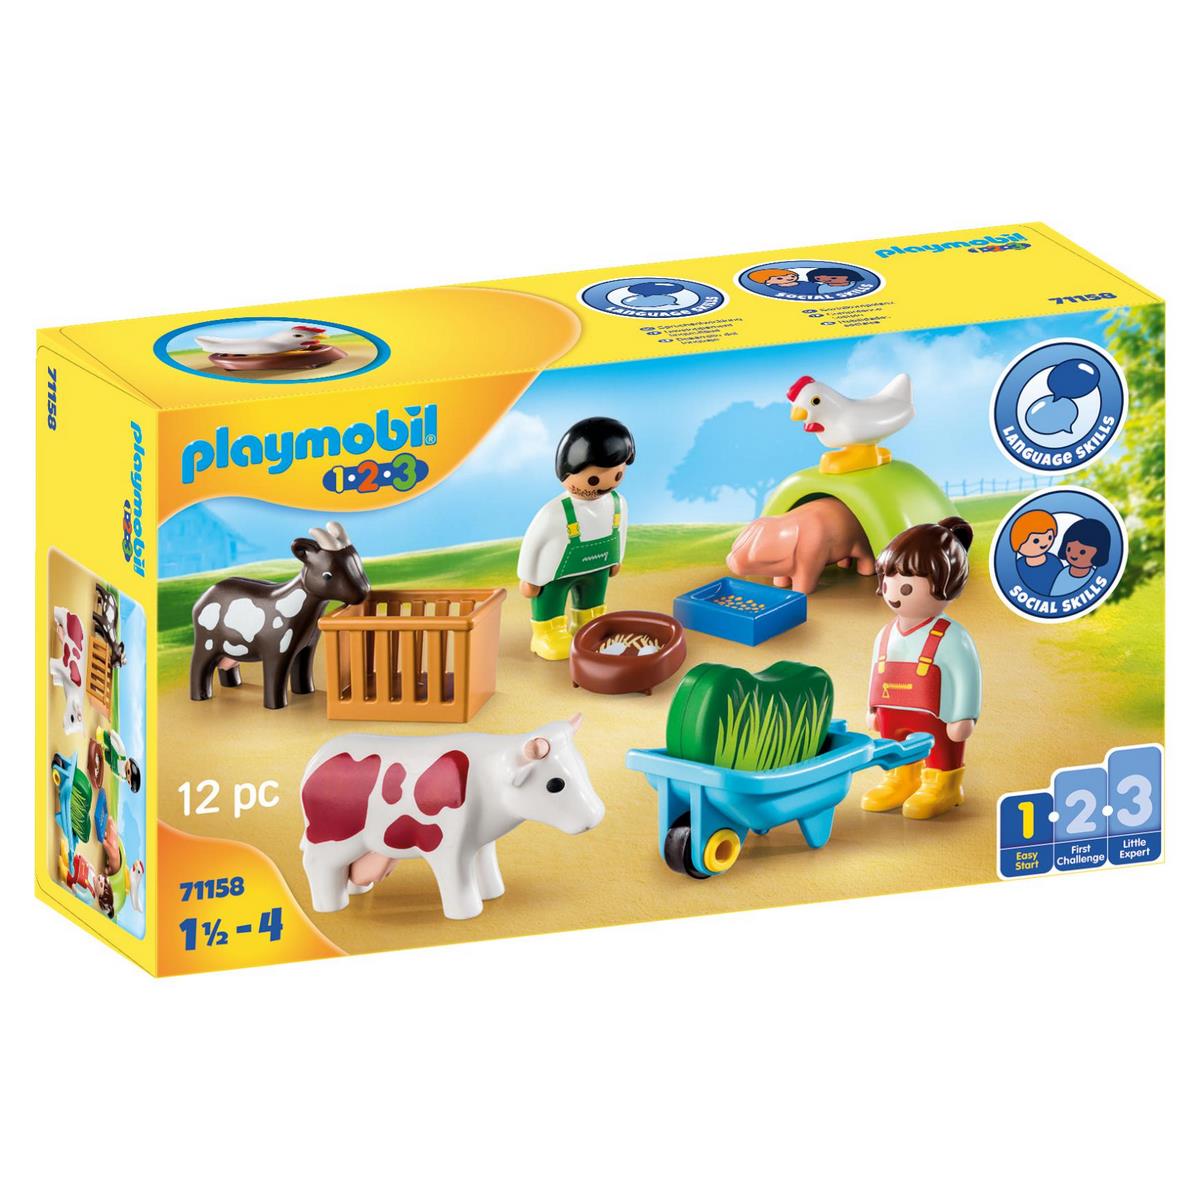 ② Ferme Playmobil 123, parlante et interactive — Jouets